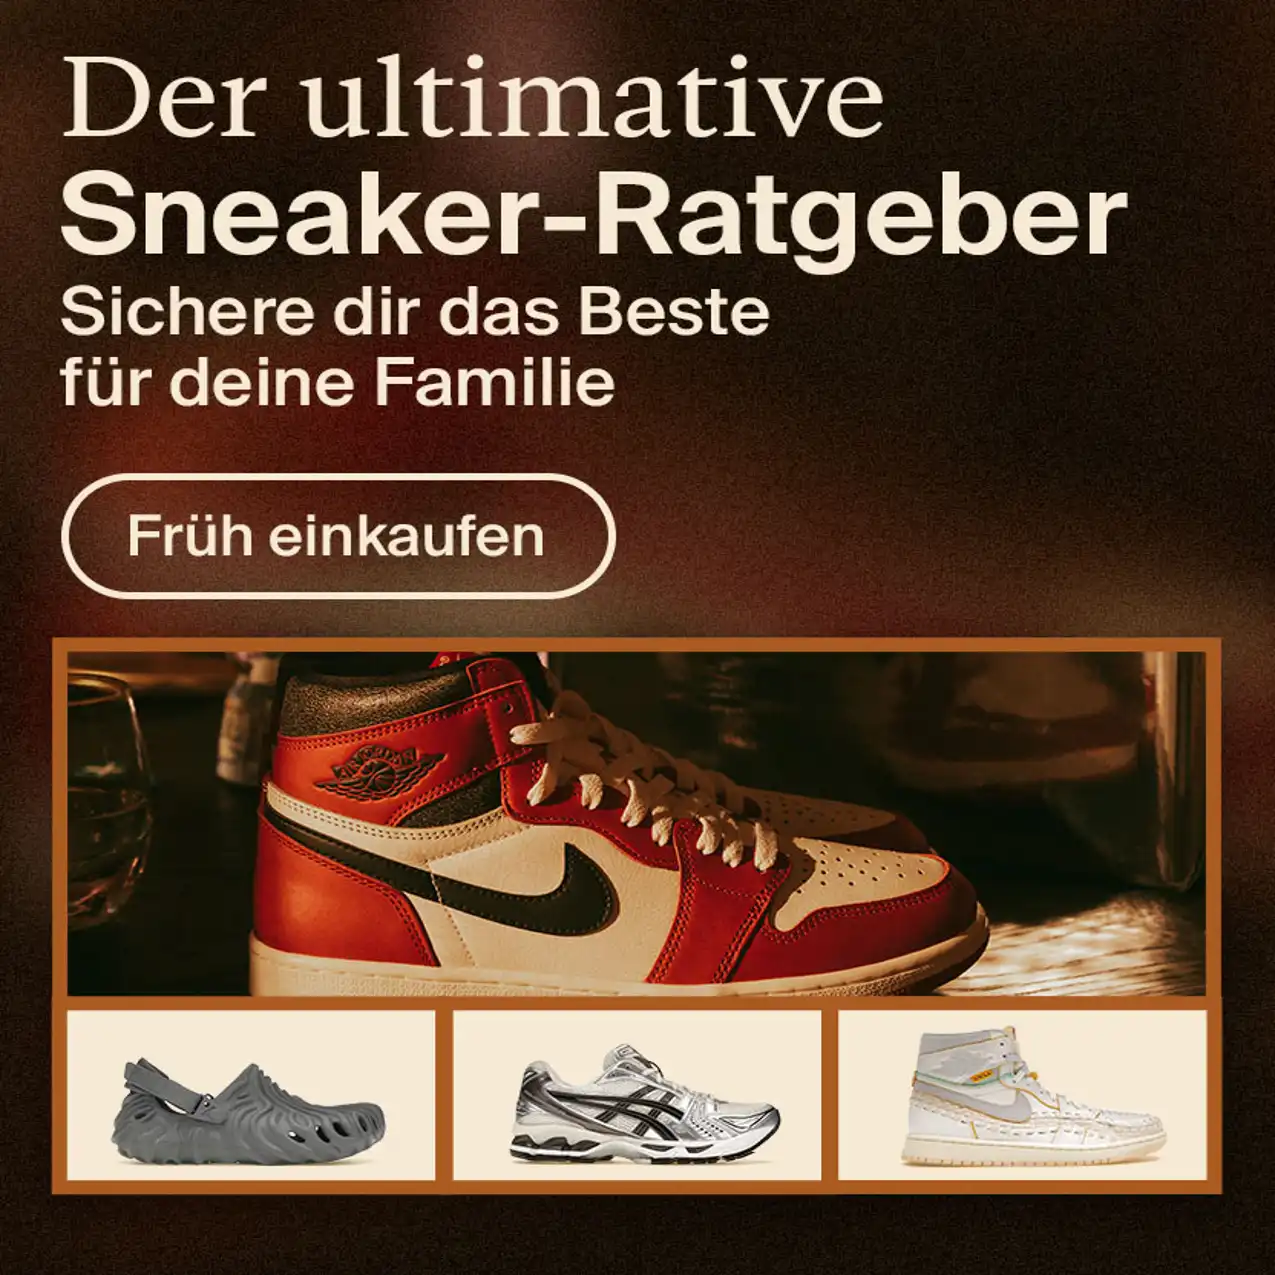 StockX: Sneakers, Streetwear, figurine, borse, orologi